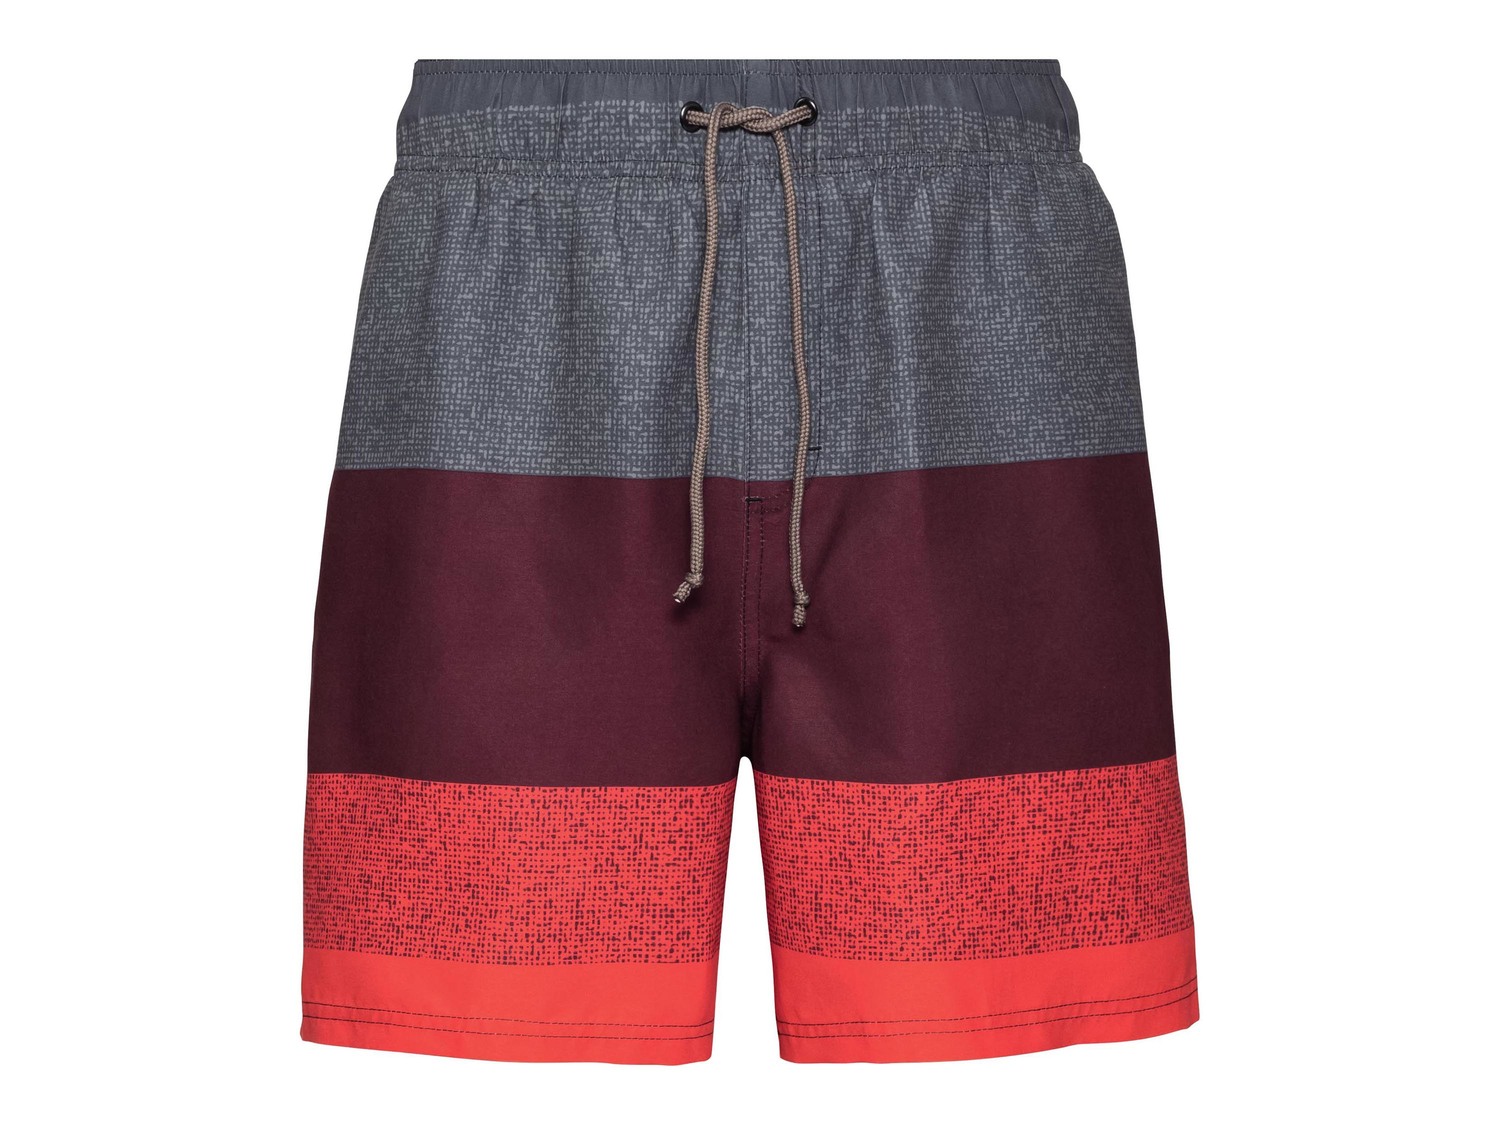 Shorts mare da uomo Livergy, prezzo 5.99 &#8364;  
Misure: S-XL